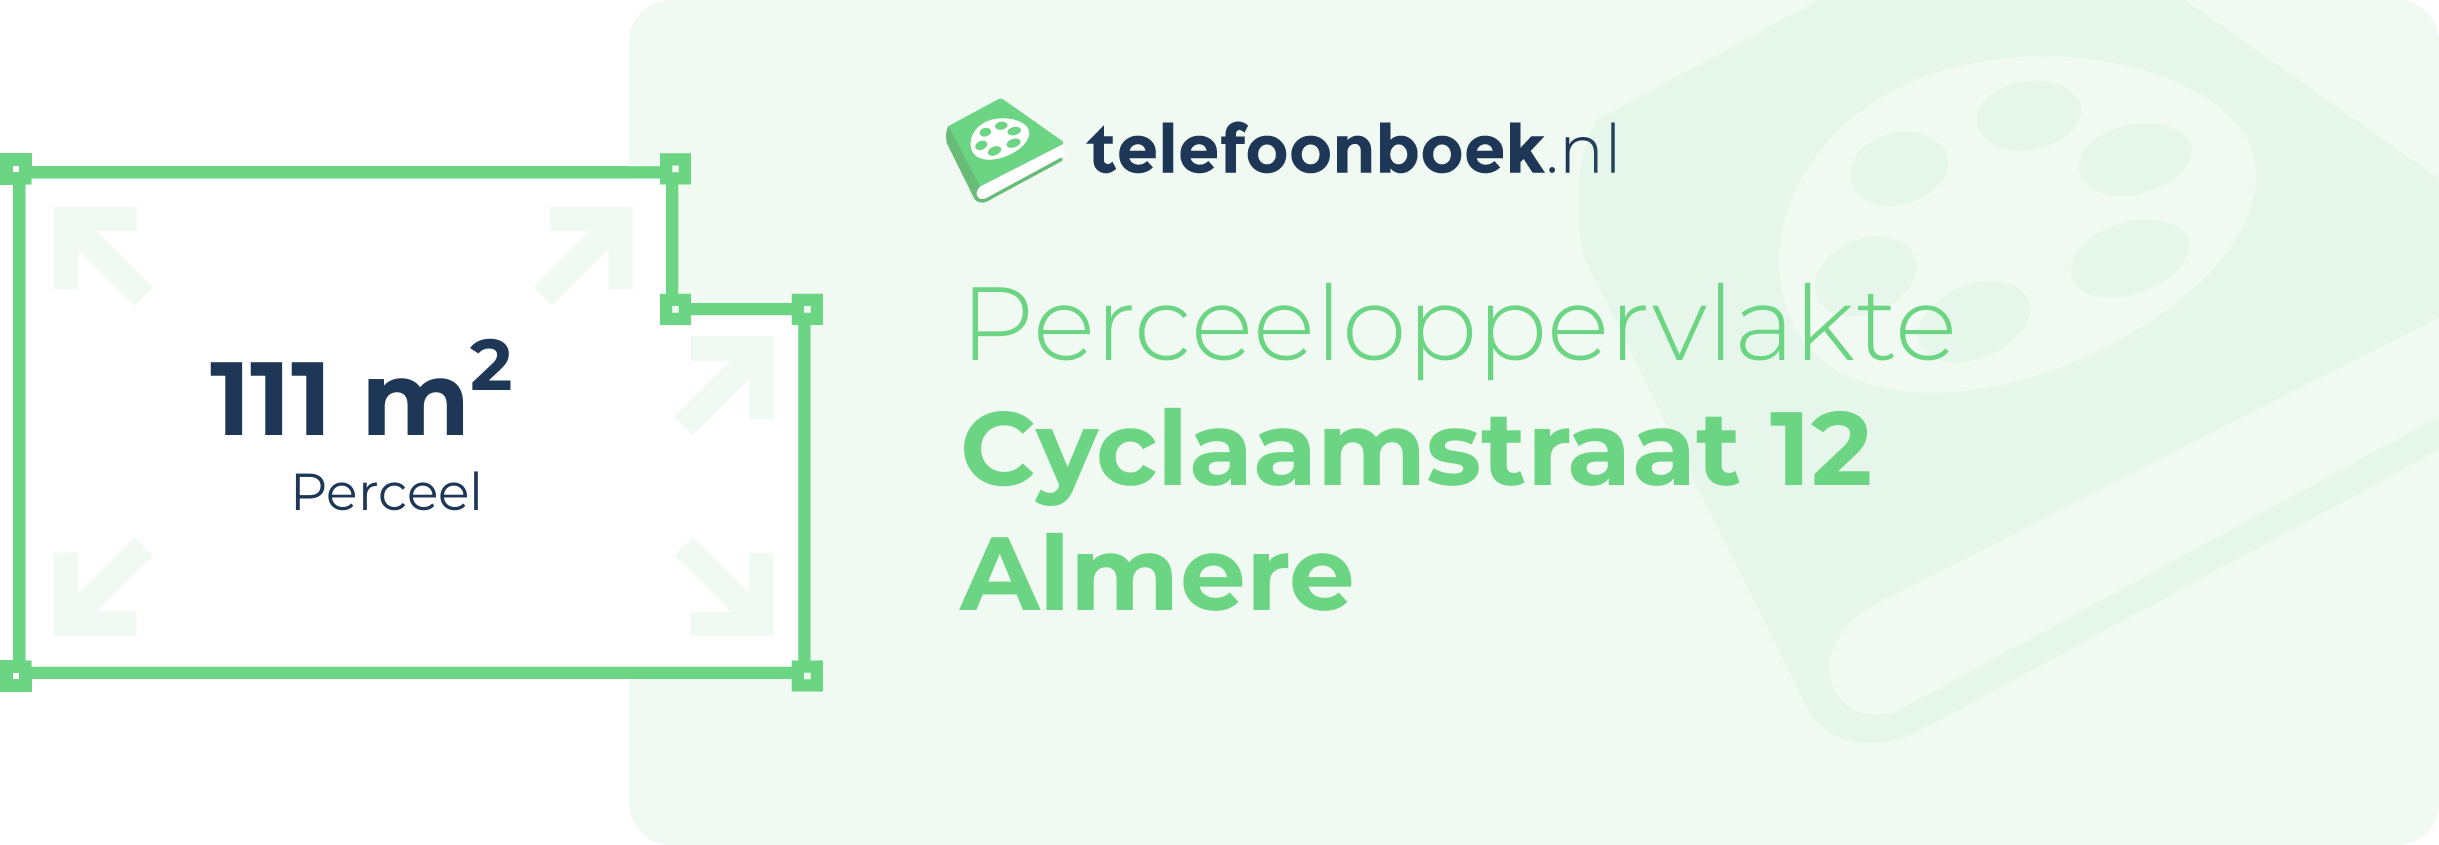 Perceeloppervlakte Cyclaamstraat 12 Almere